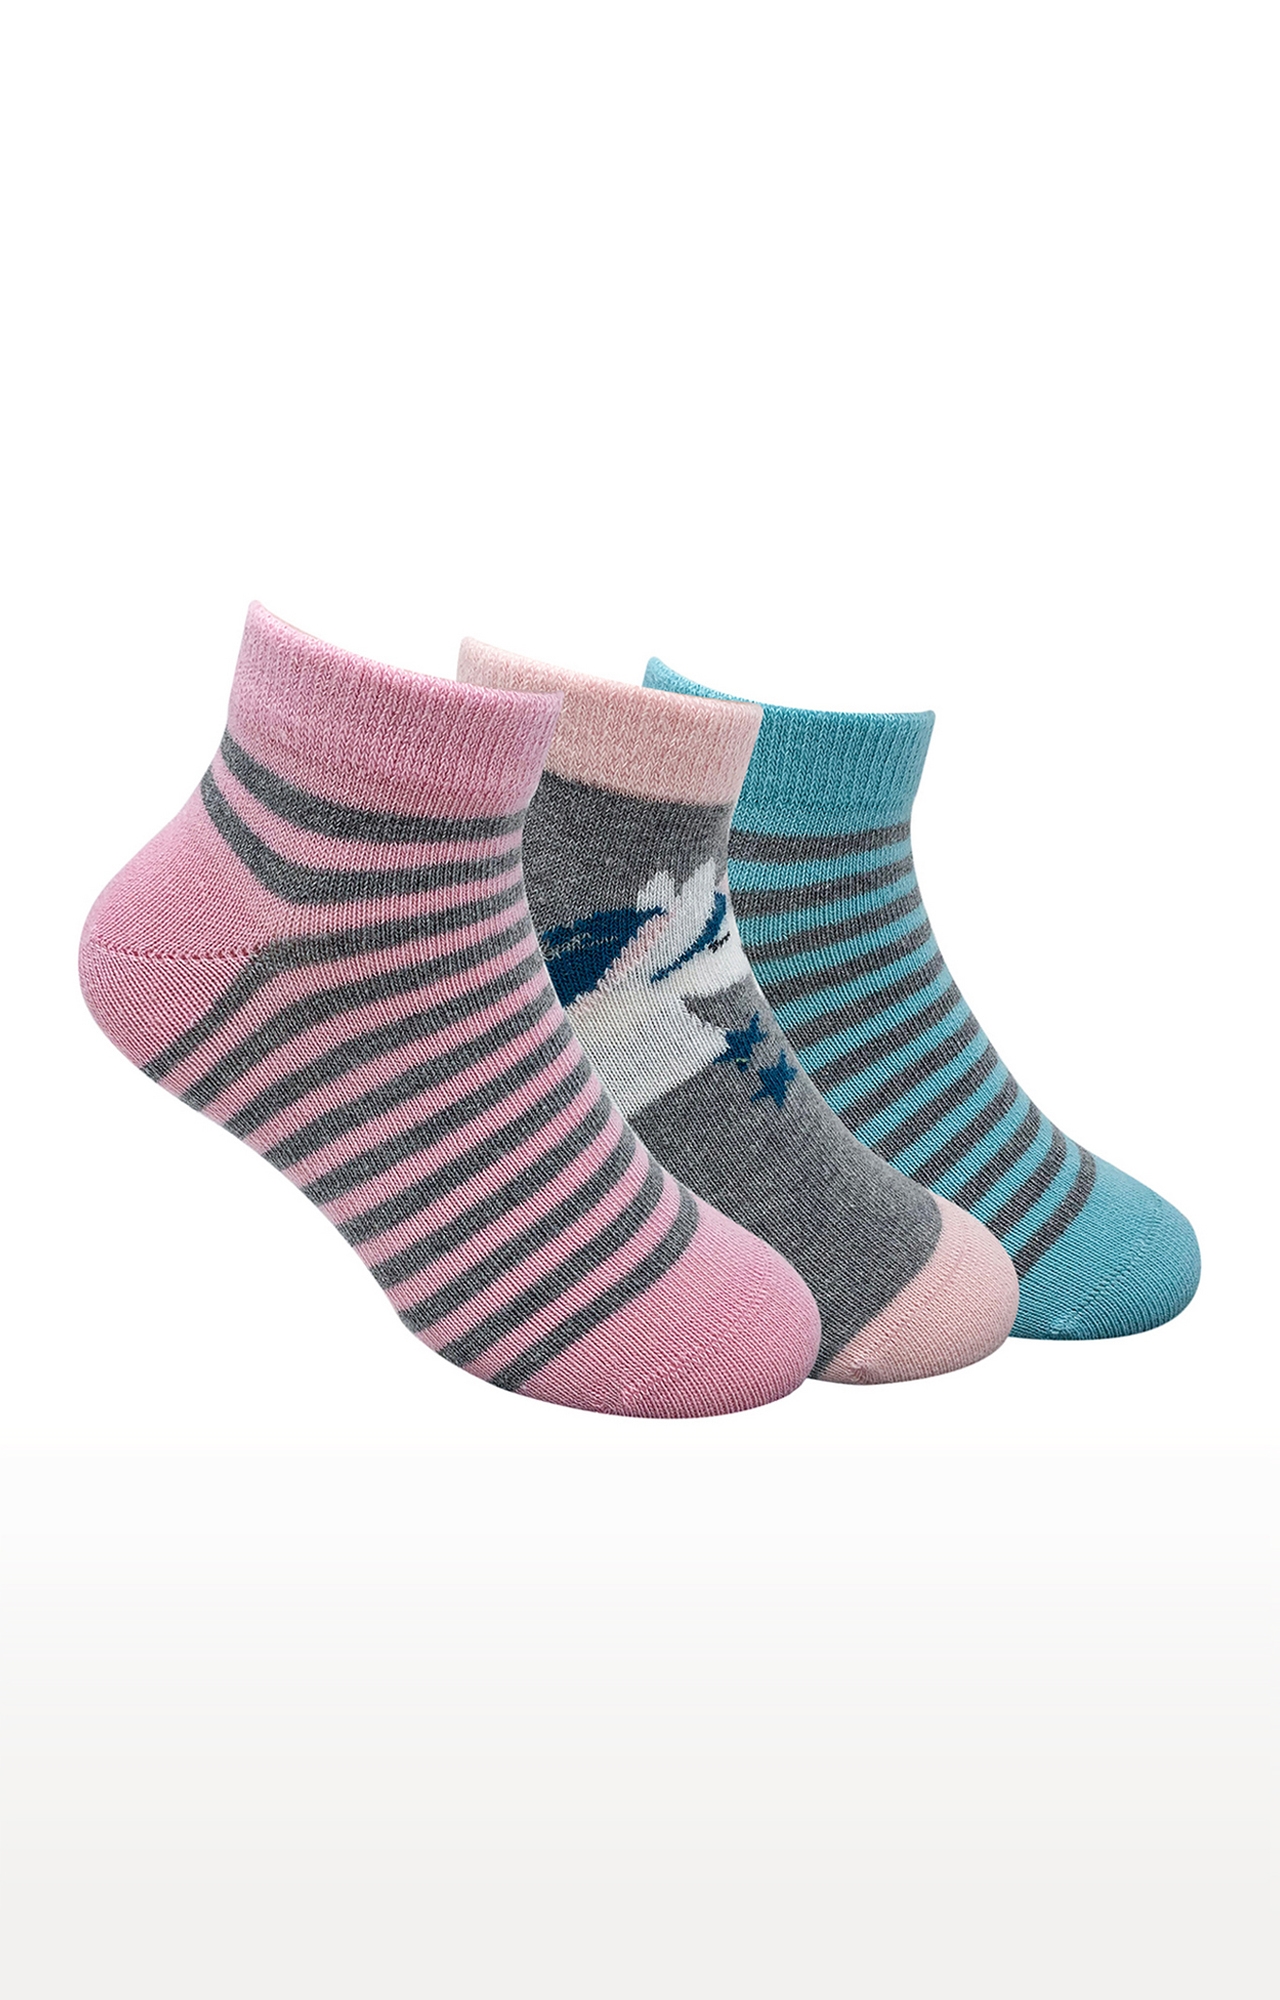 Mint & Oak Unicorn Love Cotton Multi Ankle Length Socks for Kids - Pack of 3